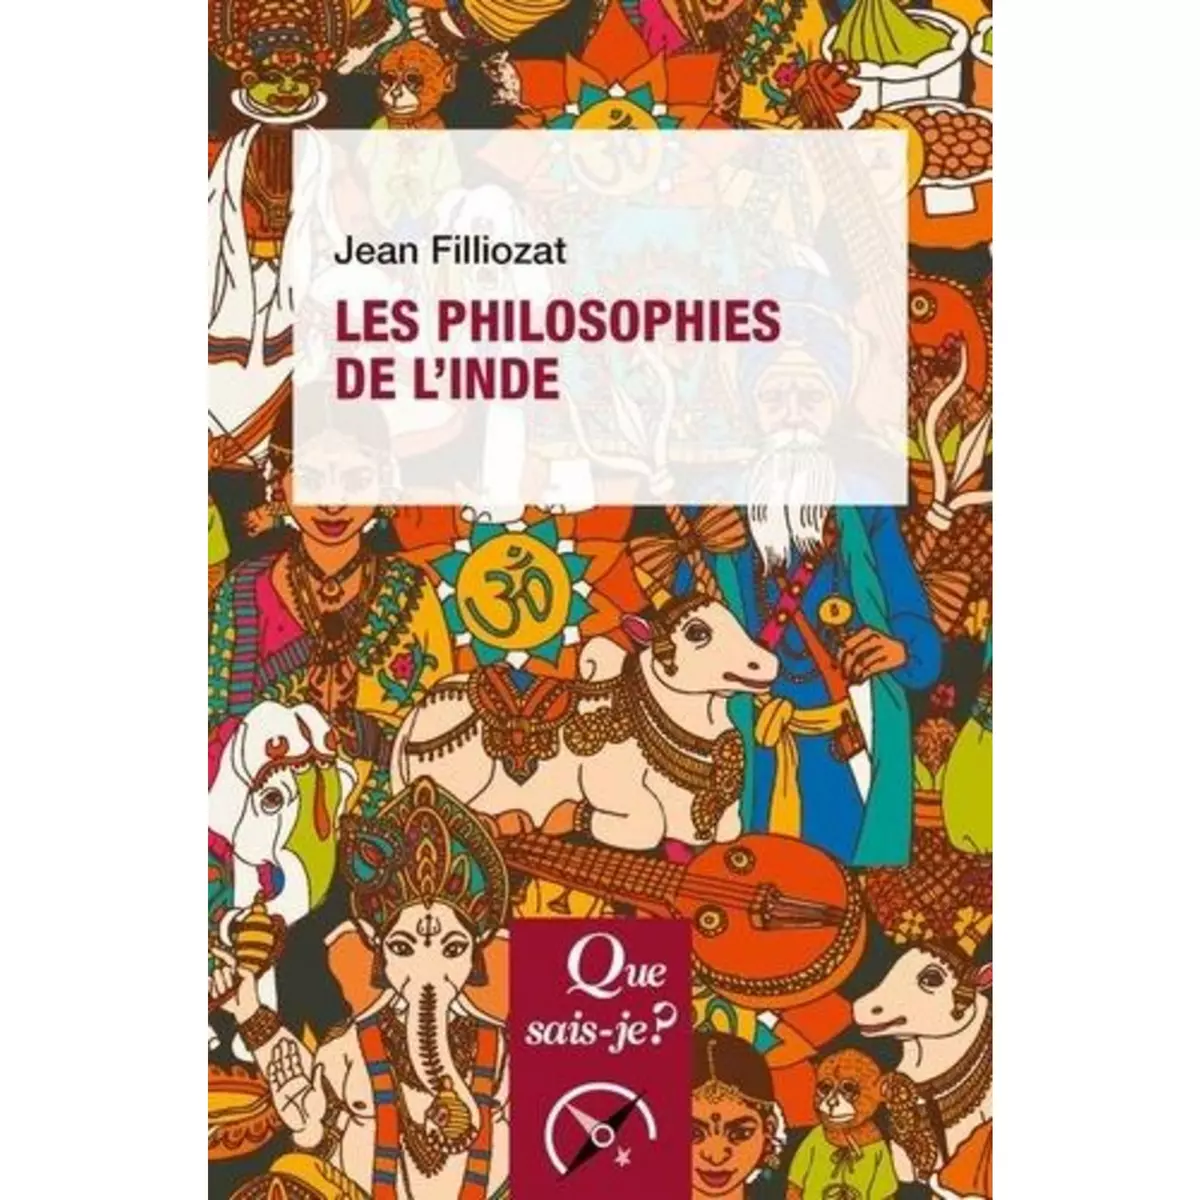  LES PHILOSOPHIES DE L'INDE. 7E EDITION, Filliozat Jean